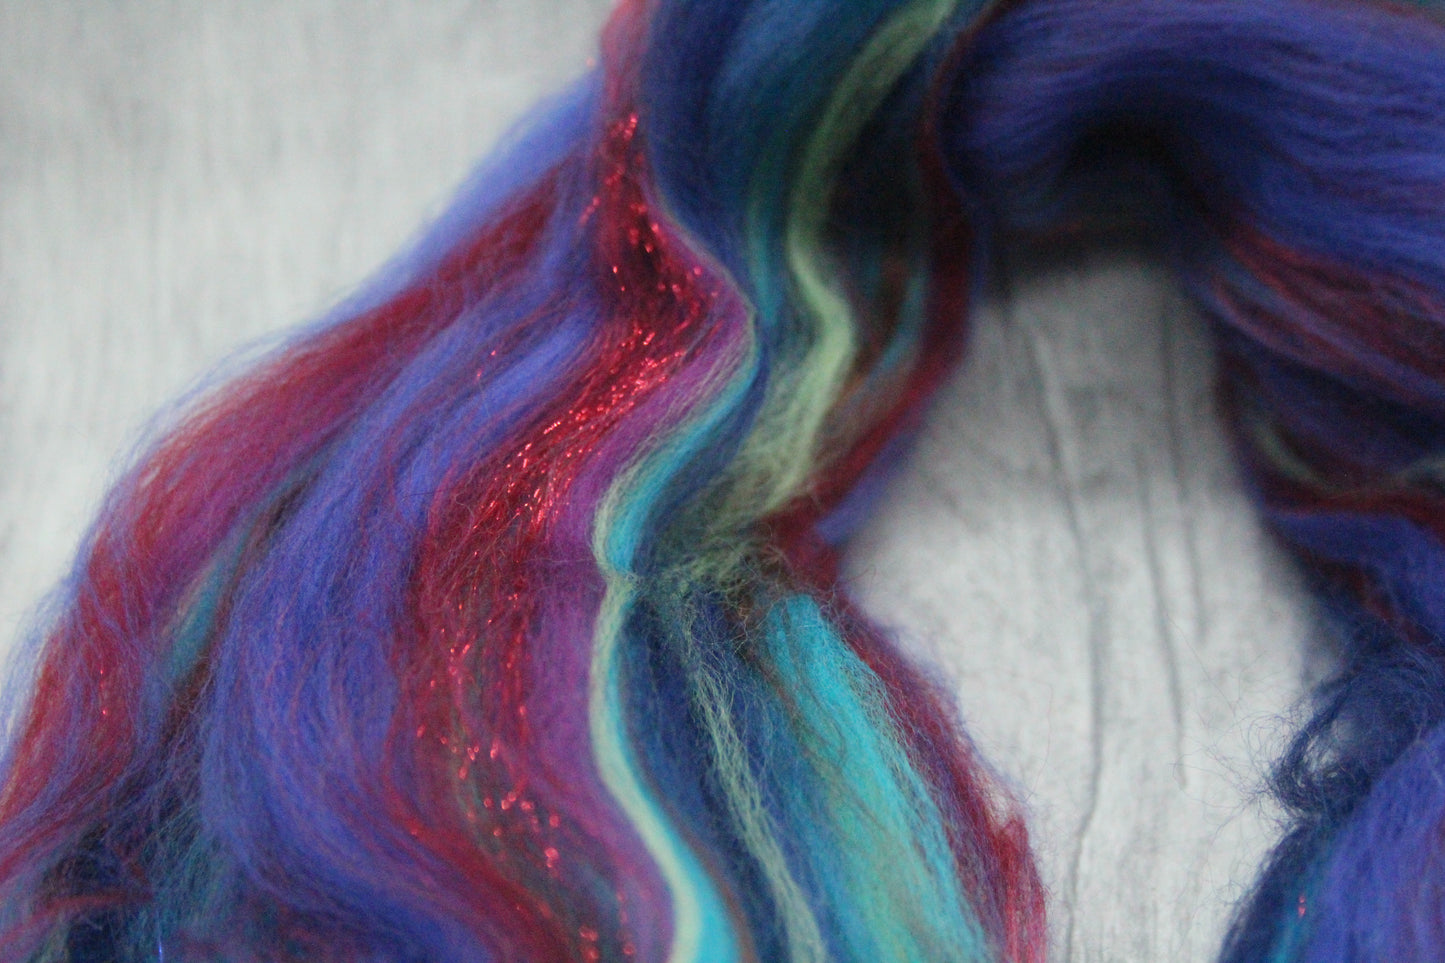 Wool Blend - Blue Red Ultraviolet  - 25 grams / 0.8 oz  - Fibre for felting, weaving or spinning